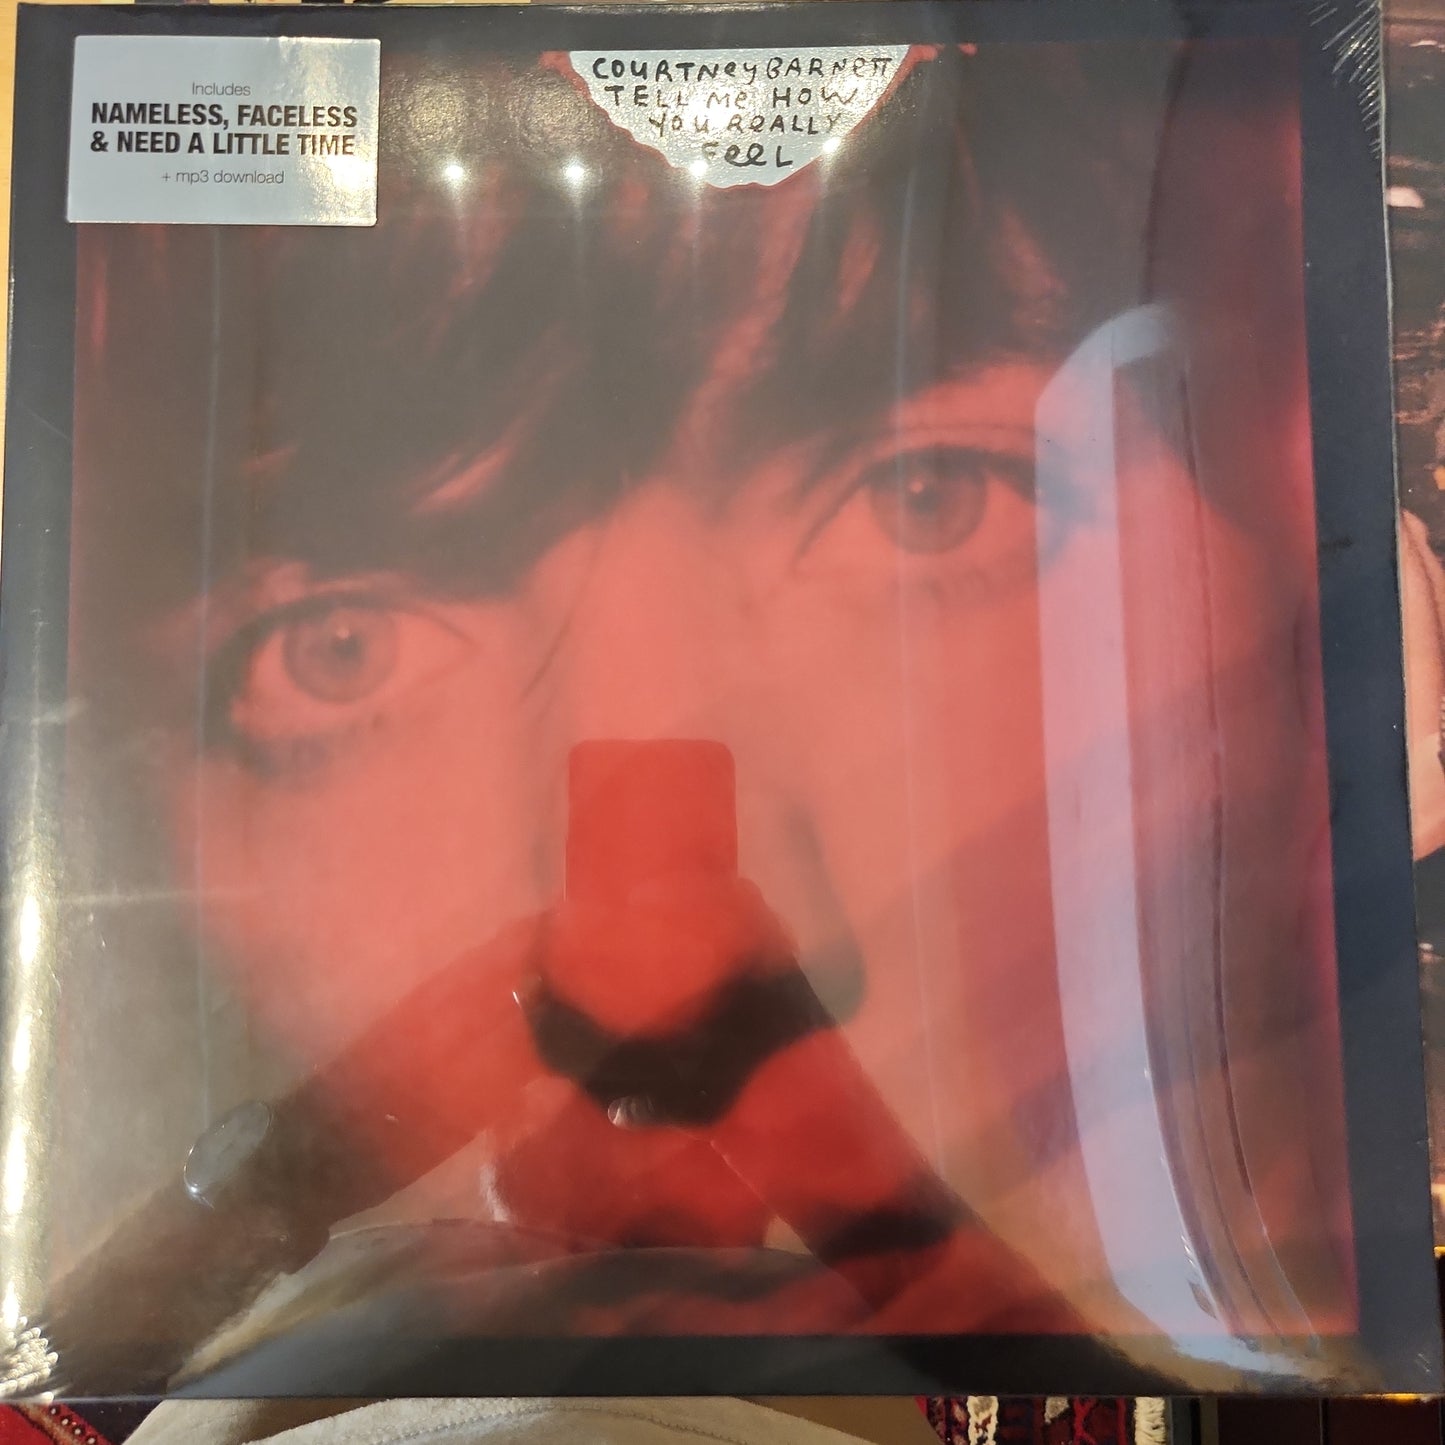 Courtney Barnett - Tell me how you really feel - Vinyl LP